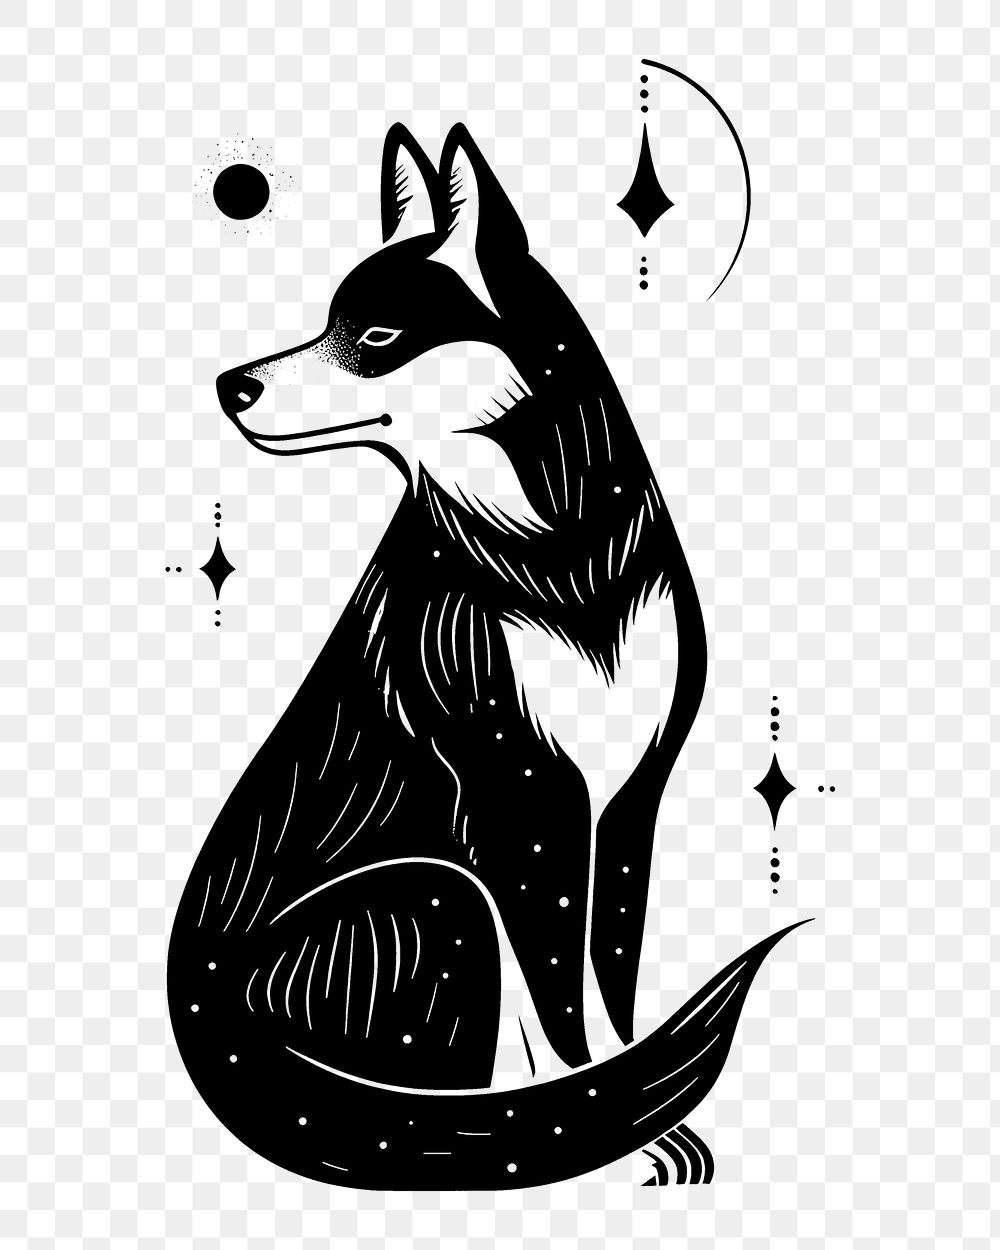 PNG Surreal abstract dog logo art illustrated kangaroo.